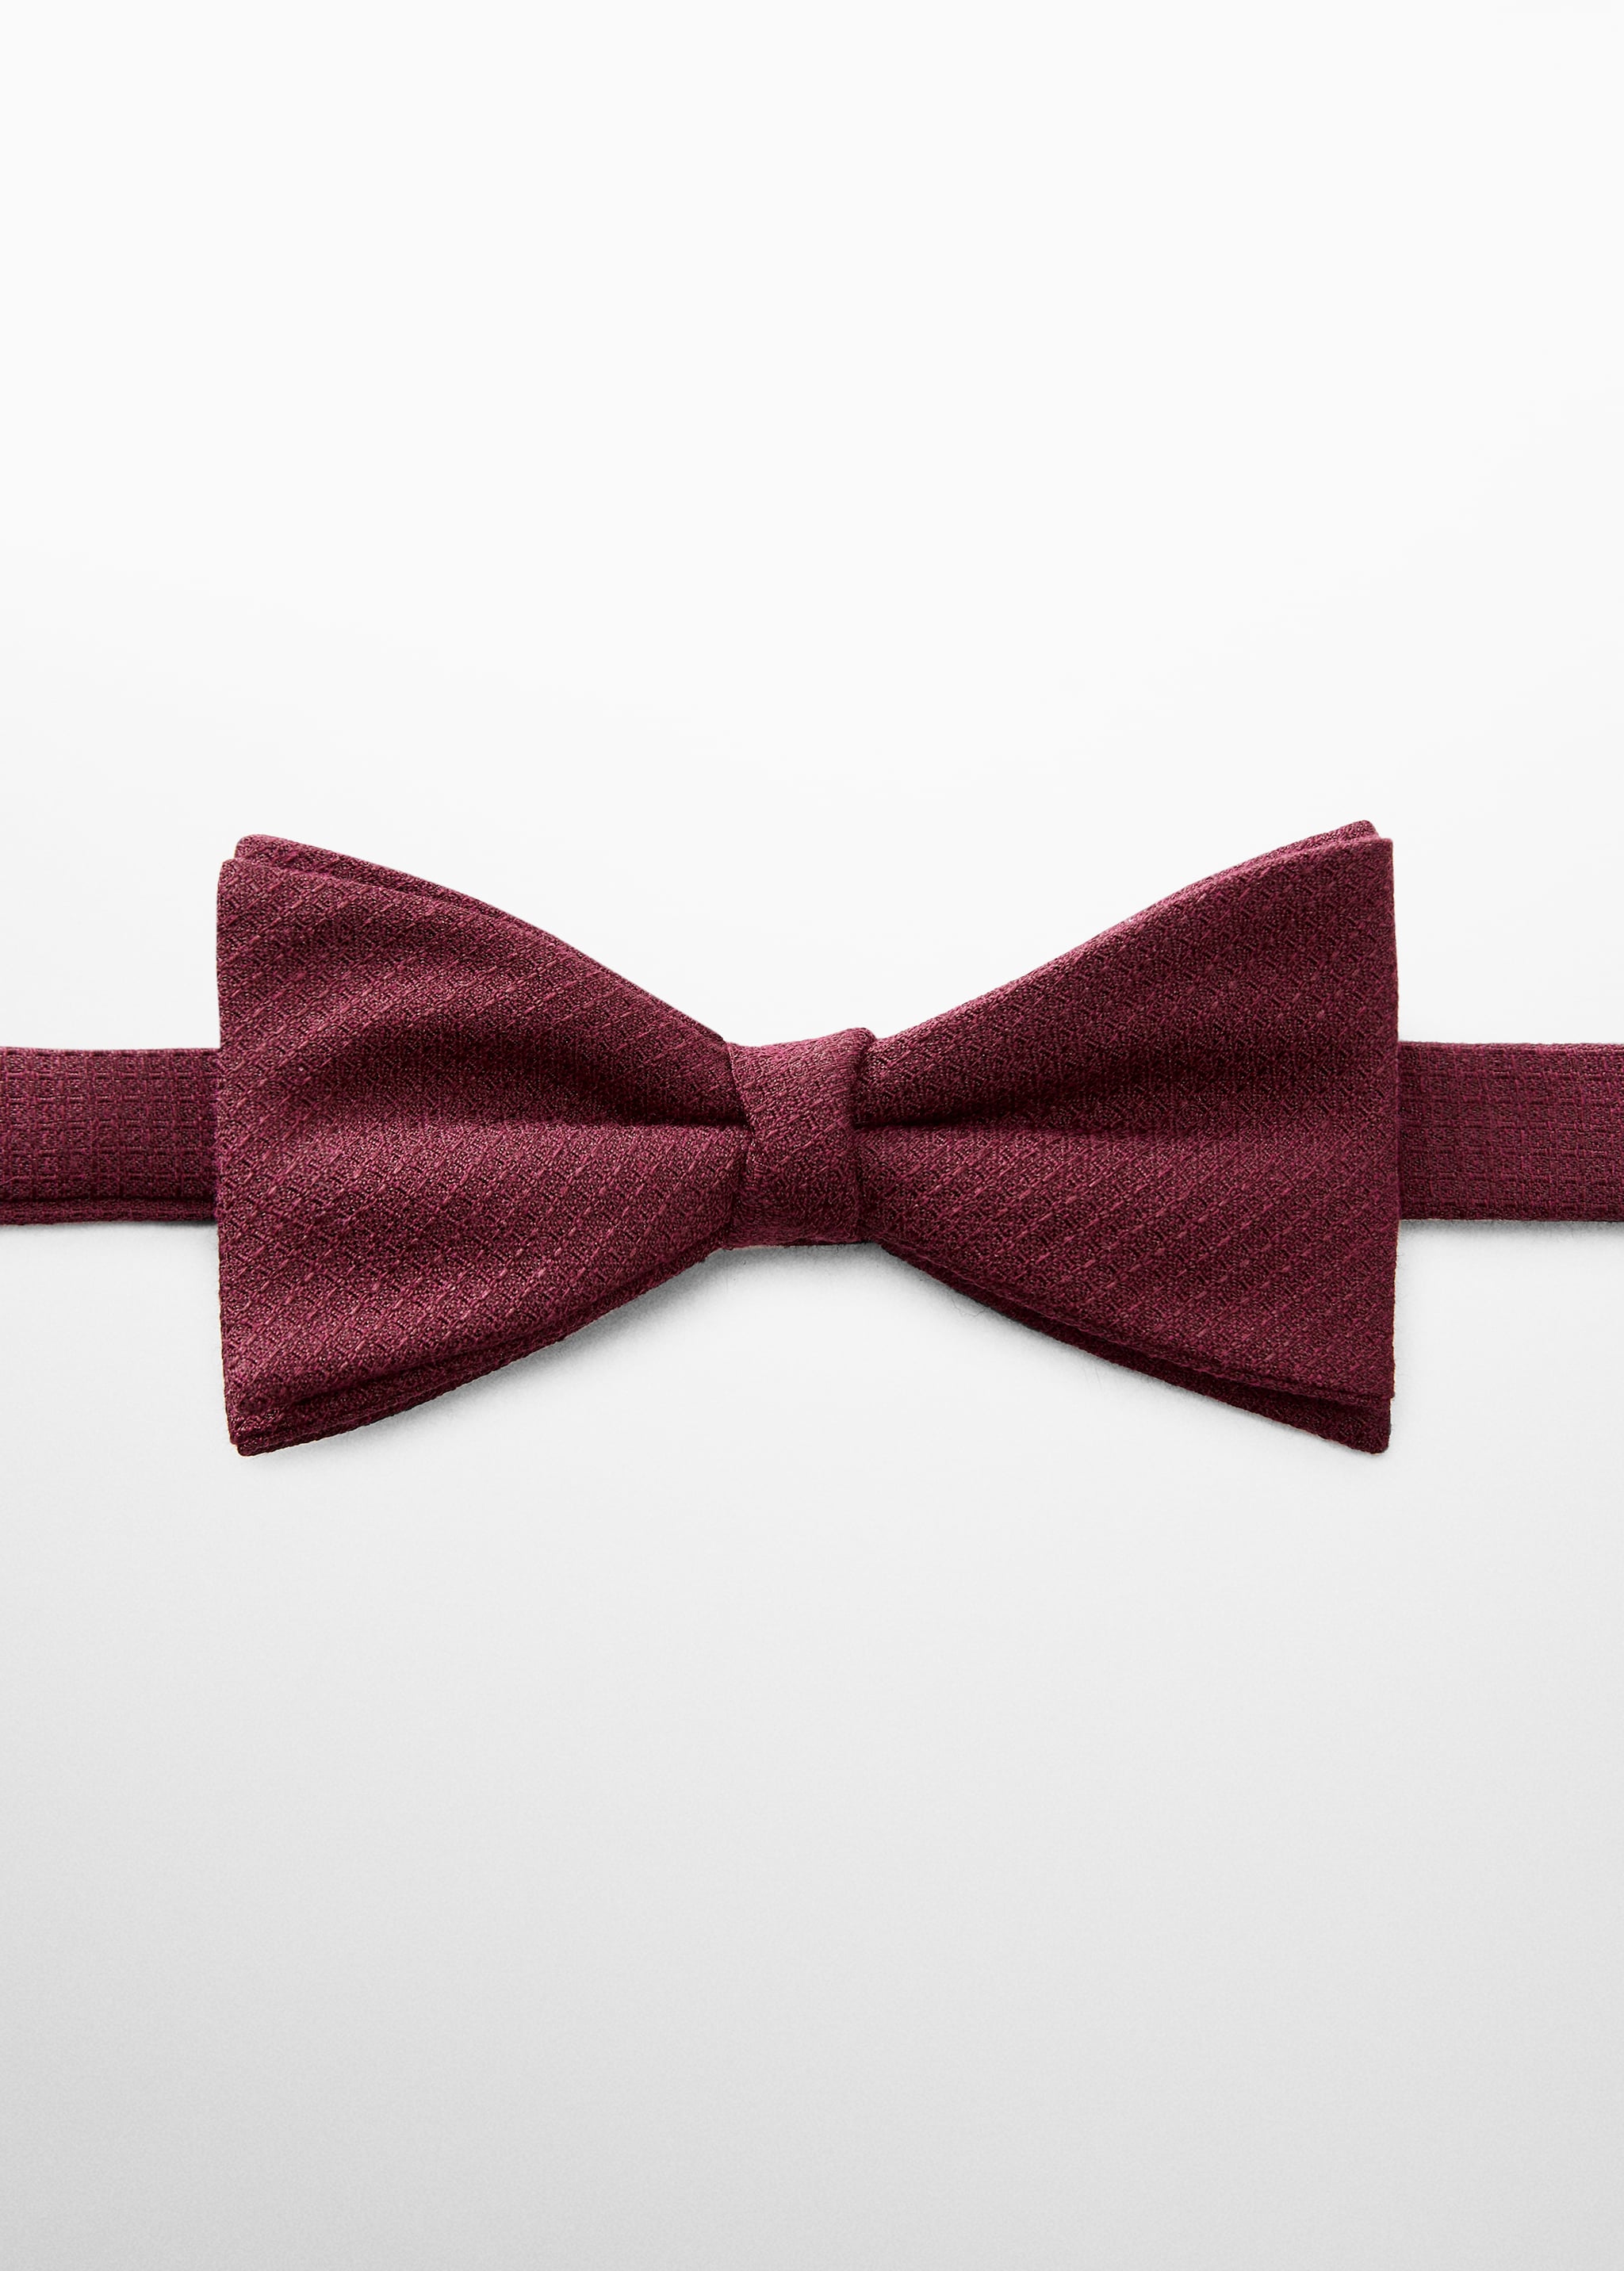 ربطة عنق كلاسيكية ذات تركيبة صغيرة - منتج دون نموذج